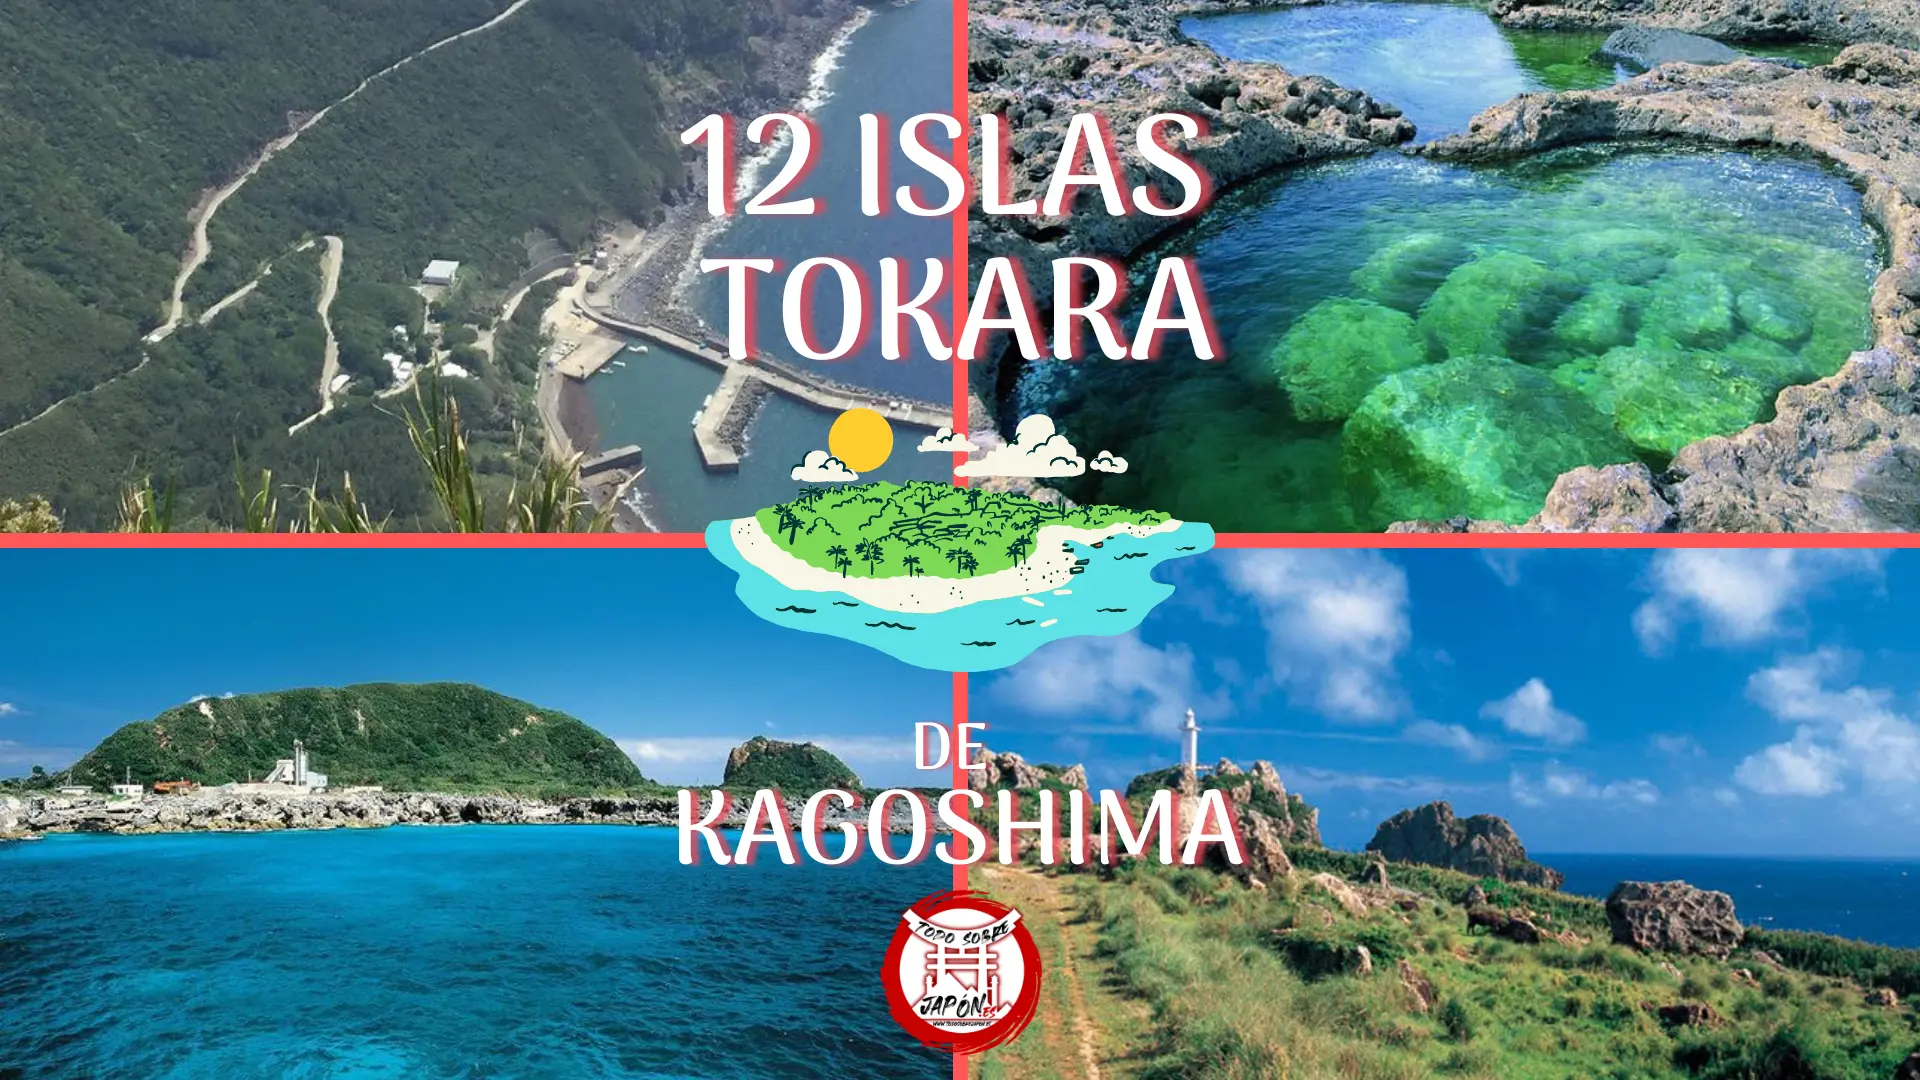 islas tokara